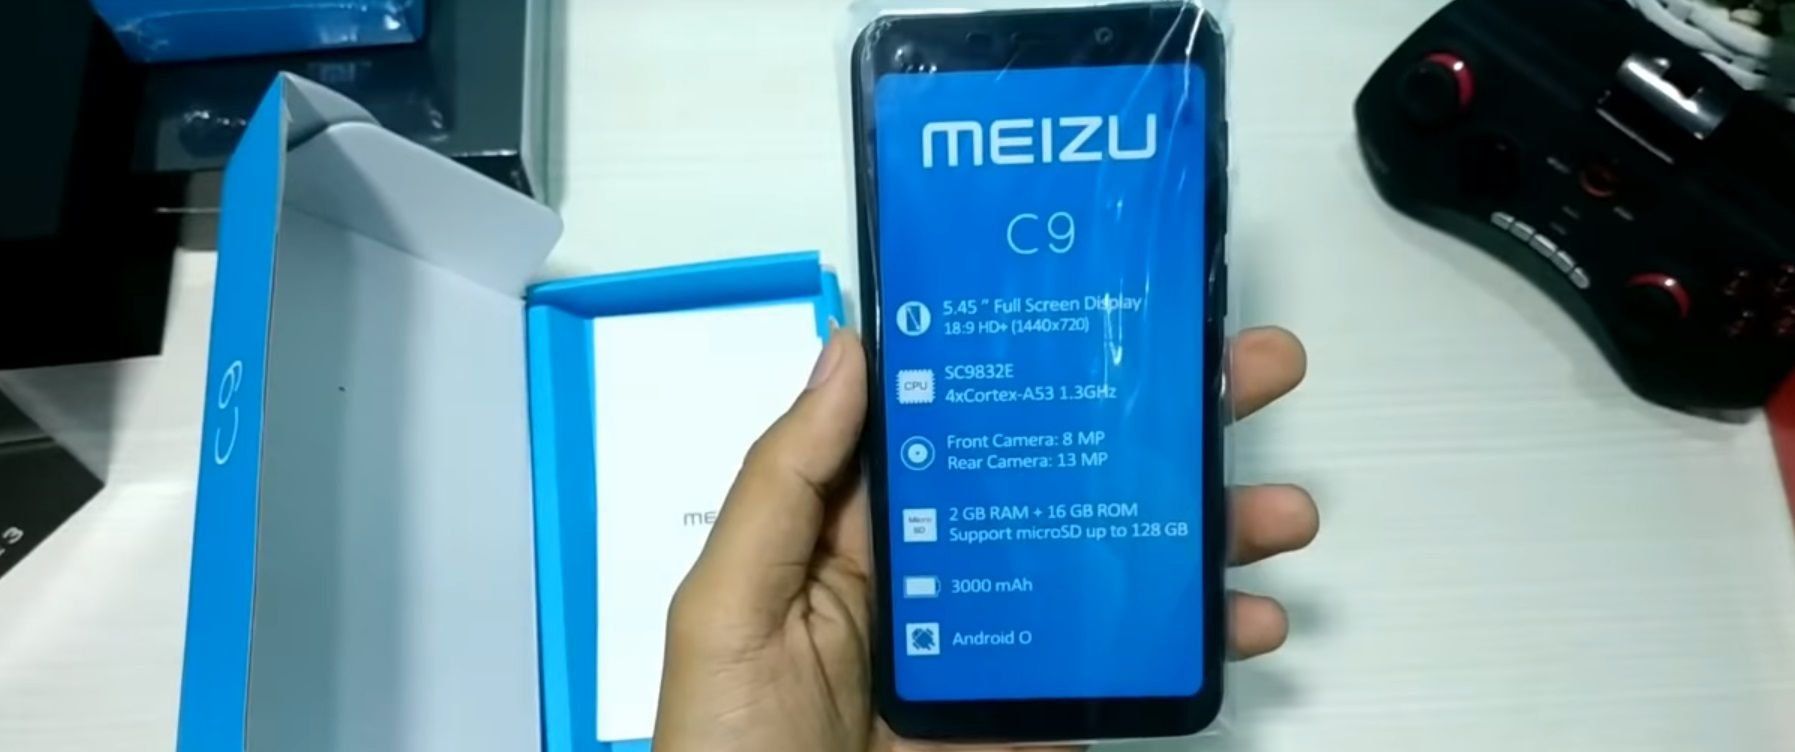 Смартфоните Meizu C9 и C9 Pro - предимства и недостатъци